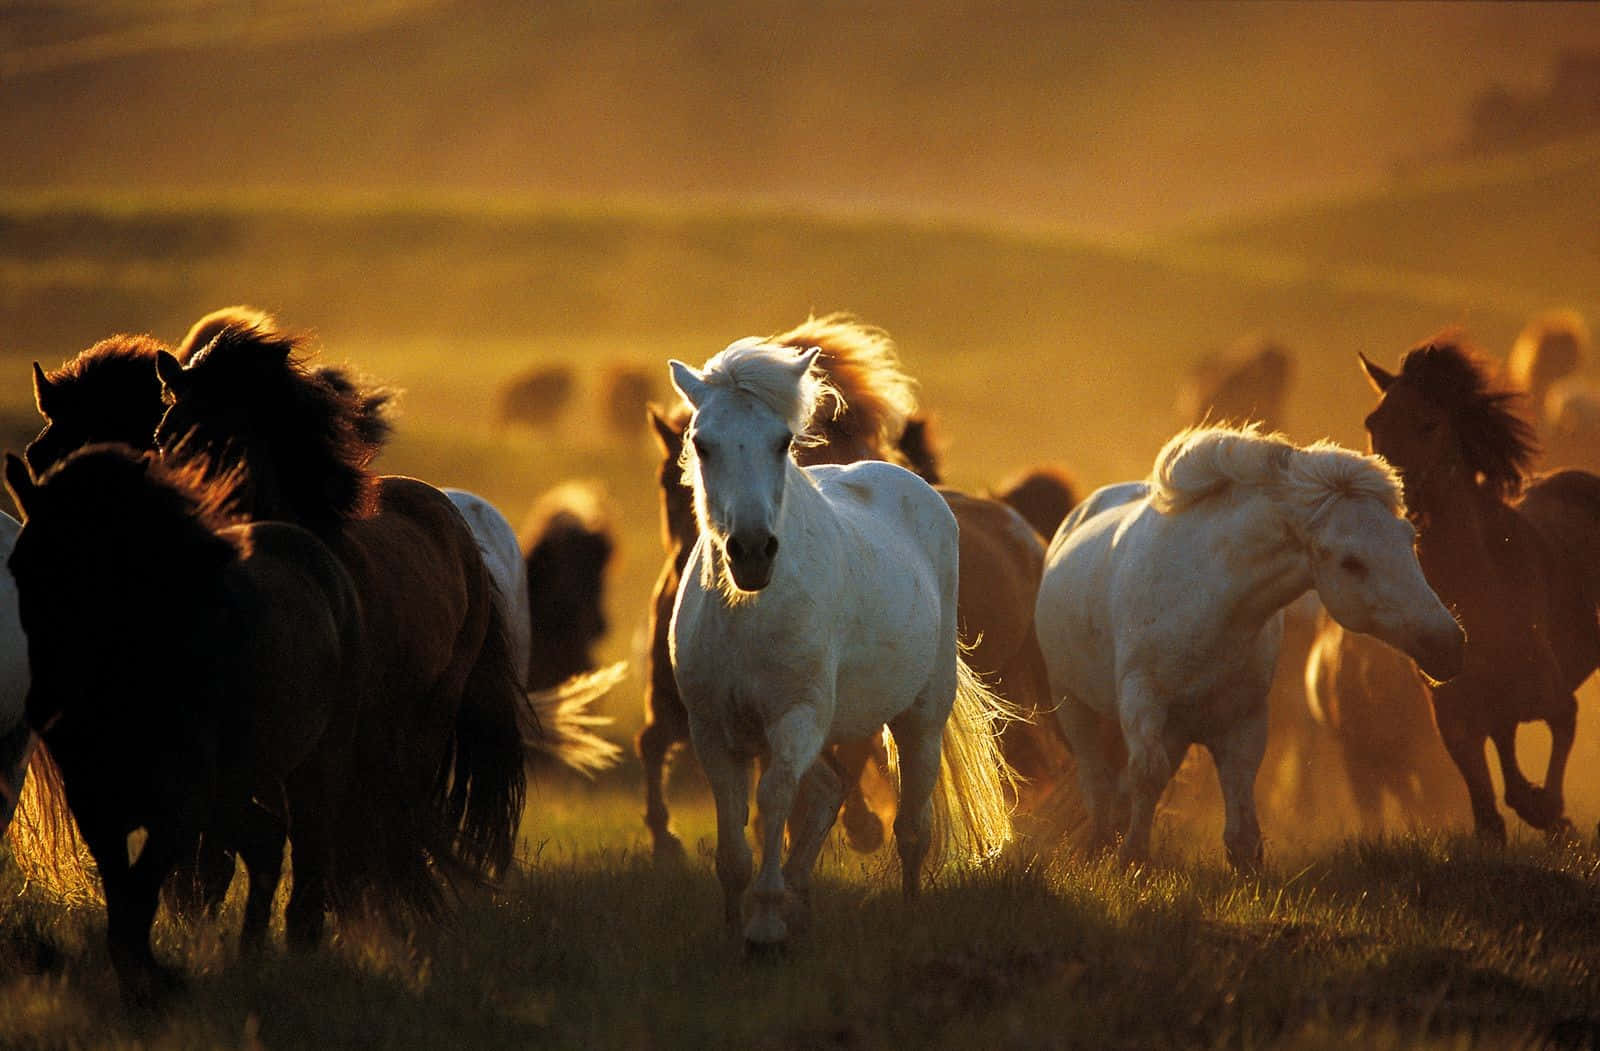 Imagende Un Grupo De Caballos Mustang Corriendo.